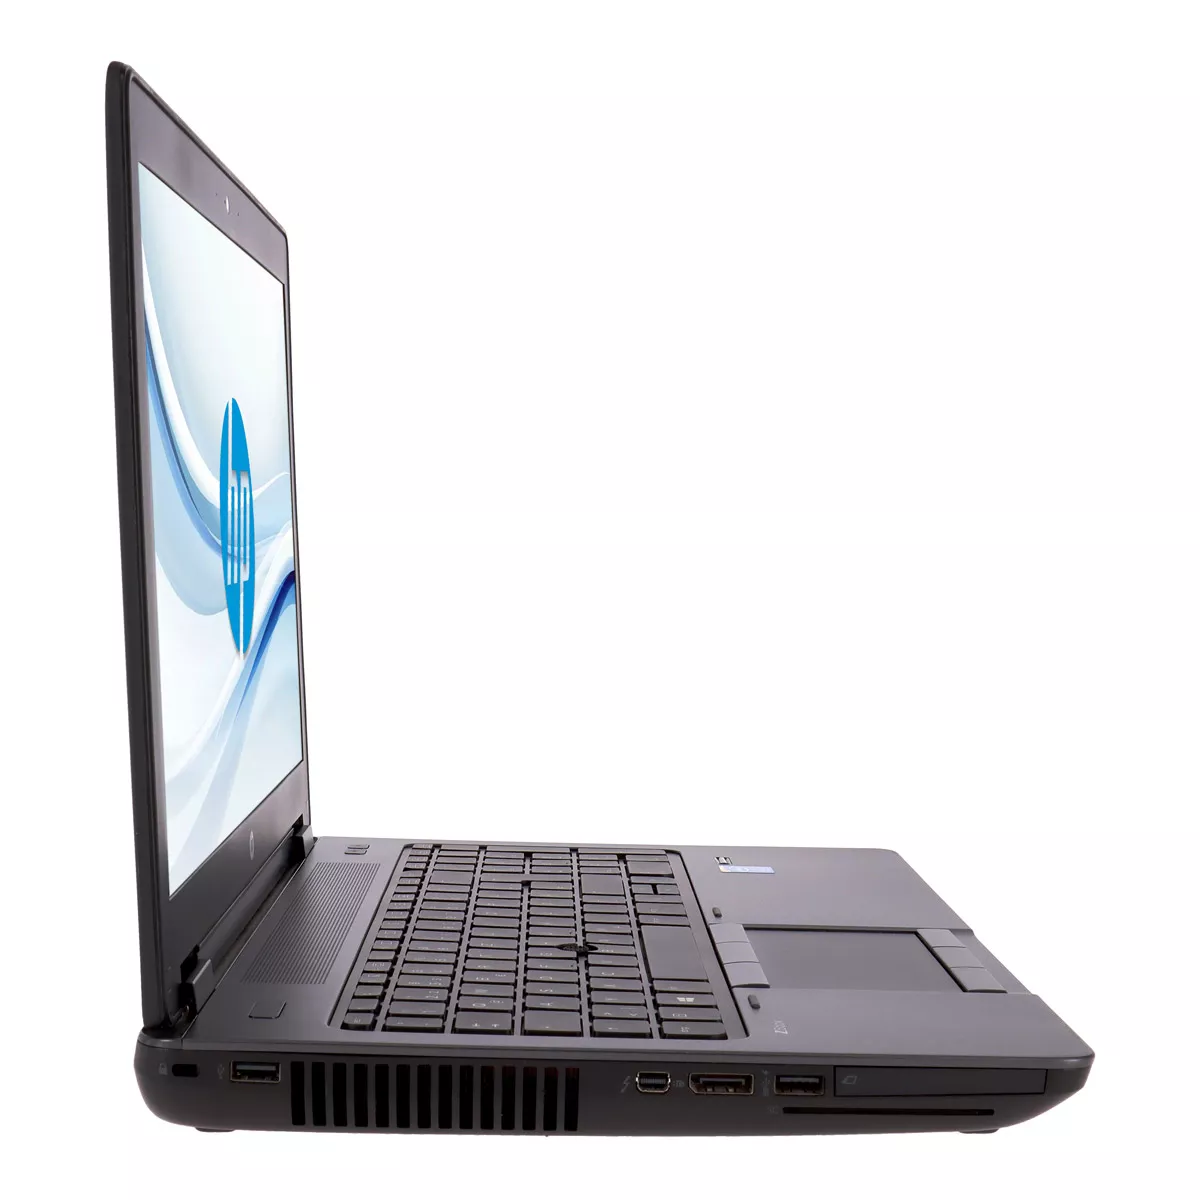 HP ZBook 15 Core i7 4600M nVidia Quadro K610M Full-HD Webcam A